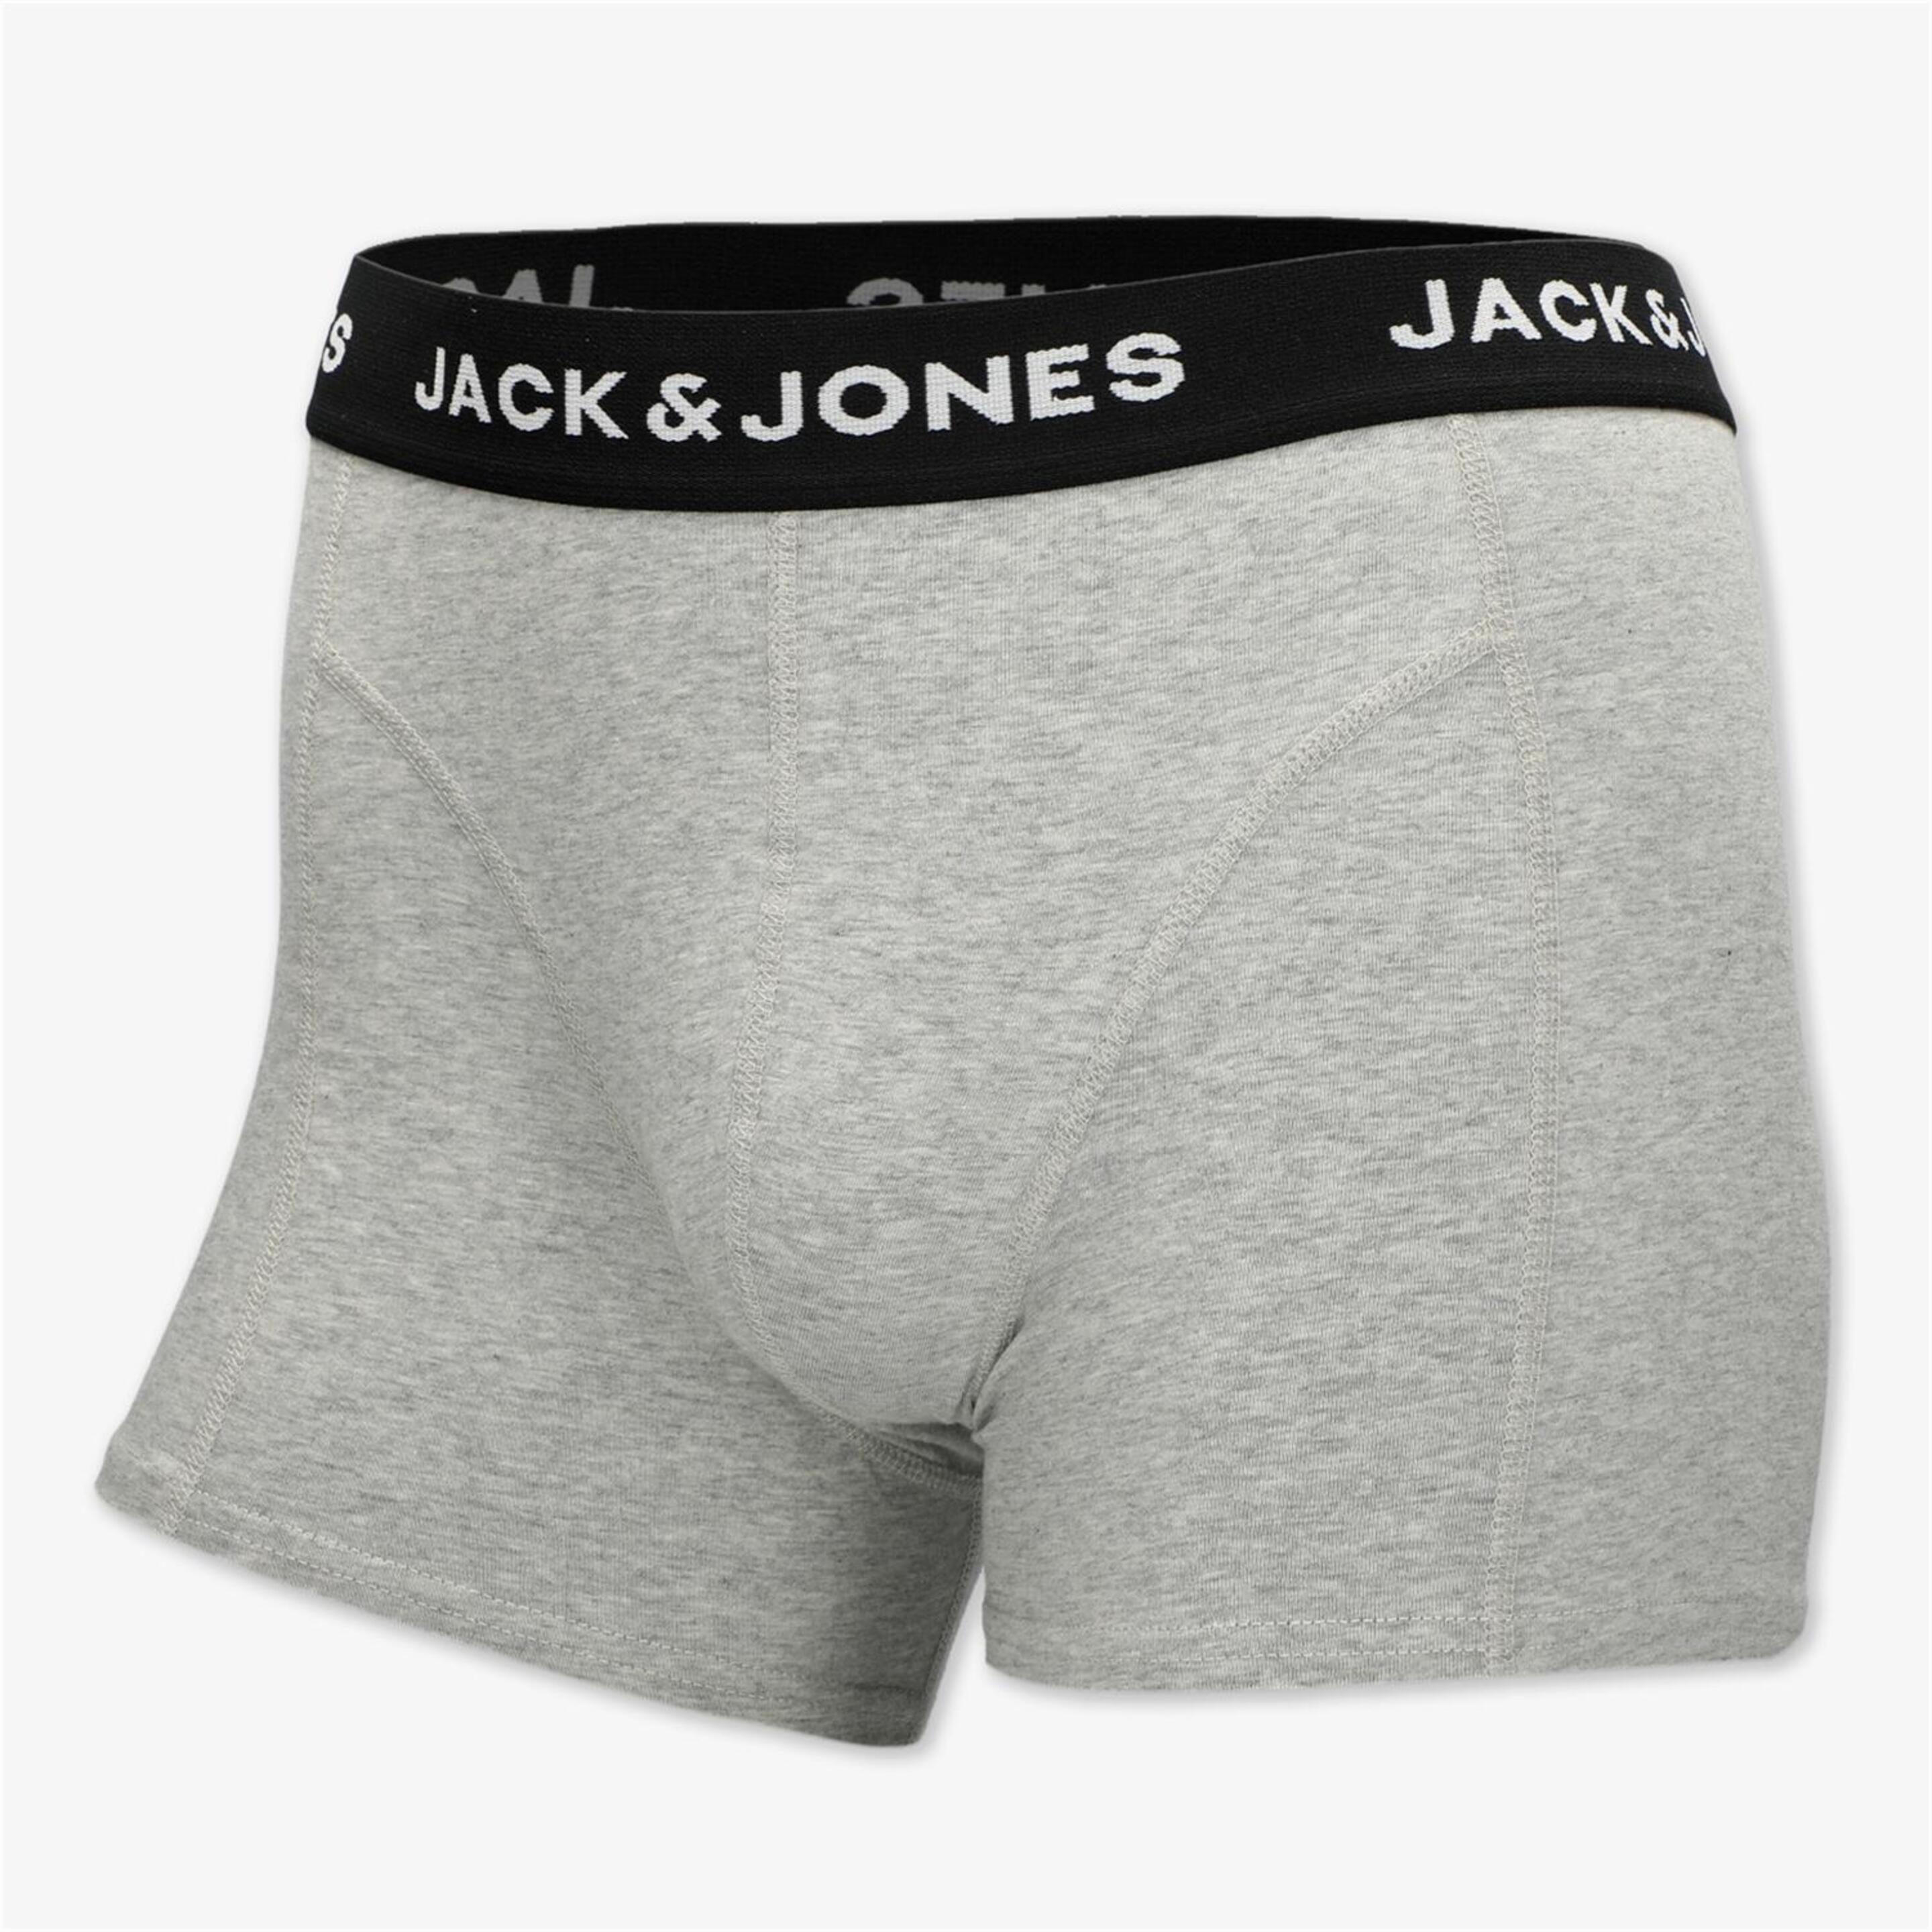 Jack & Jones Jacanthony - Gris - Calzoncillos Bóxer